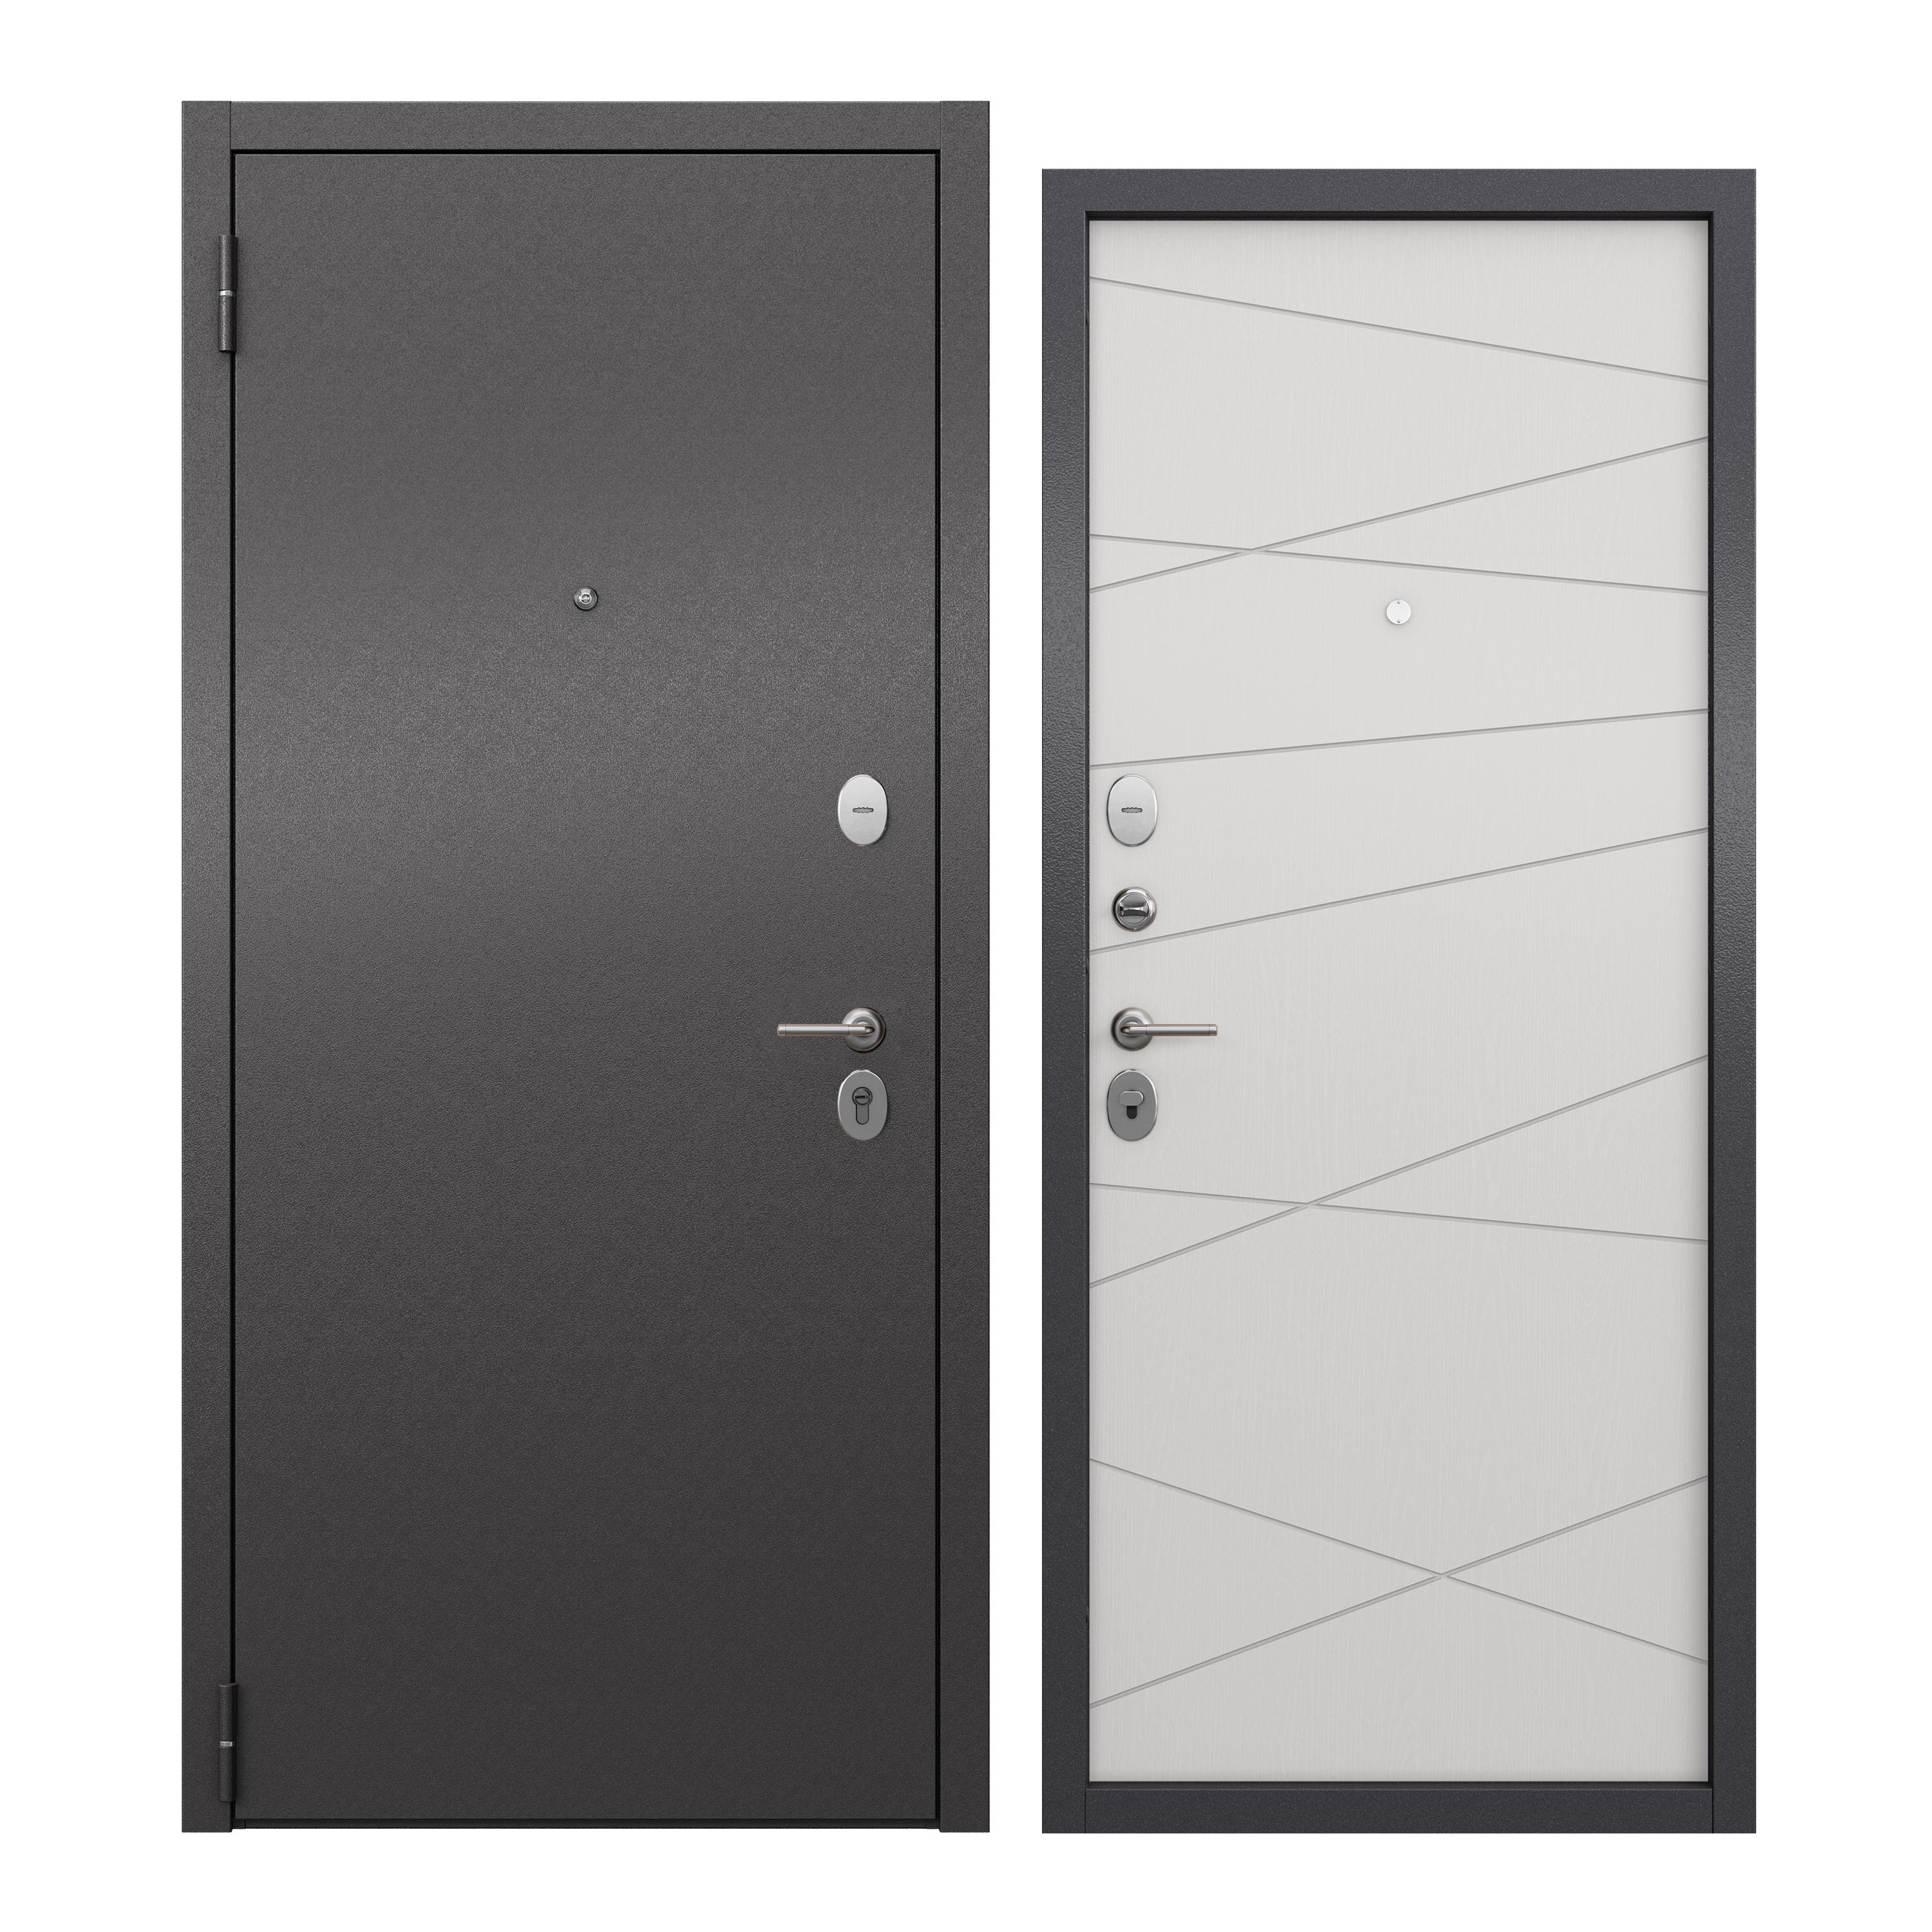 Дверь входная для квартиры ProLine металлическая Apartment X 860х2050, левая, серый/белый дверь входная дверной континент термаль экстра левая медный антик лиственница белая 860х2050 мм